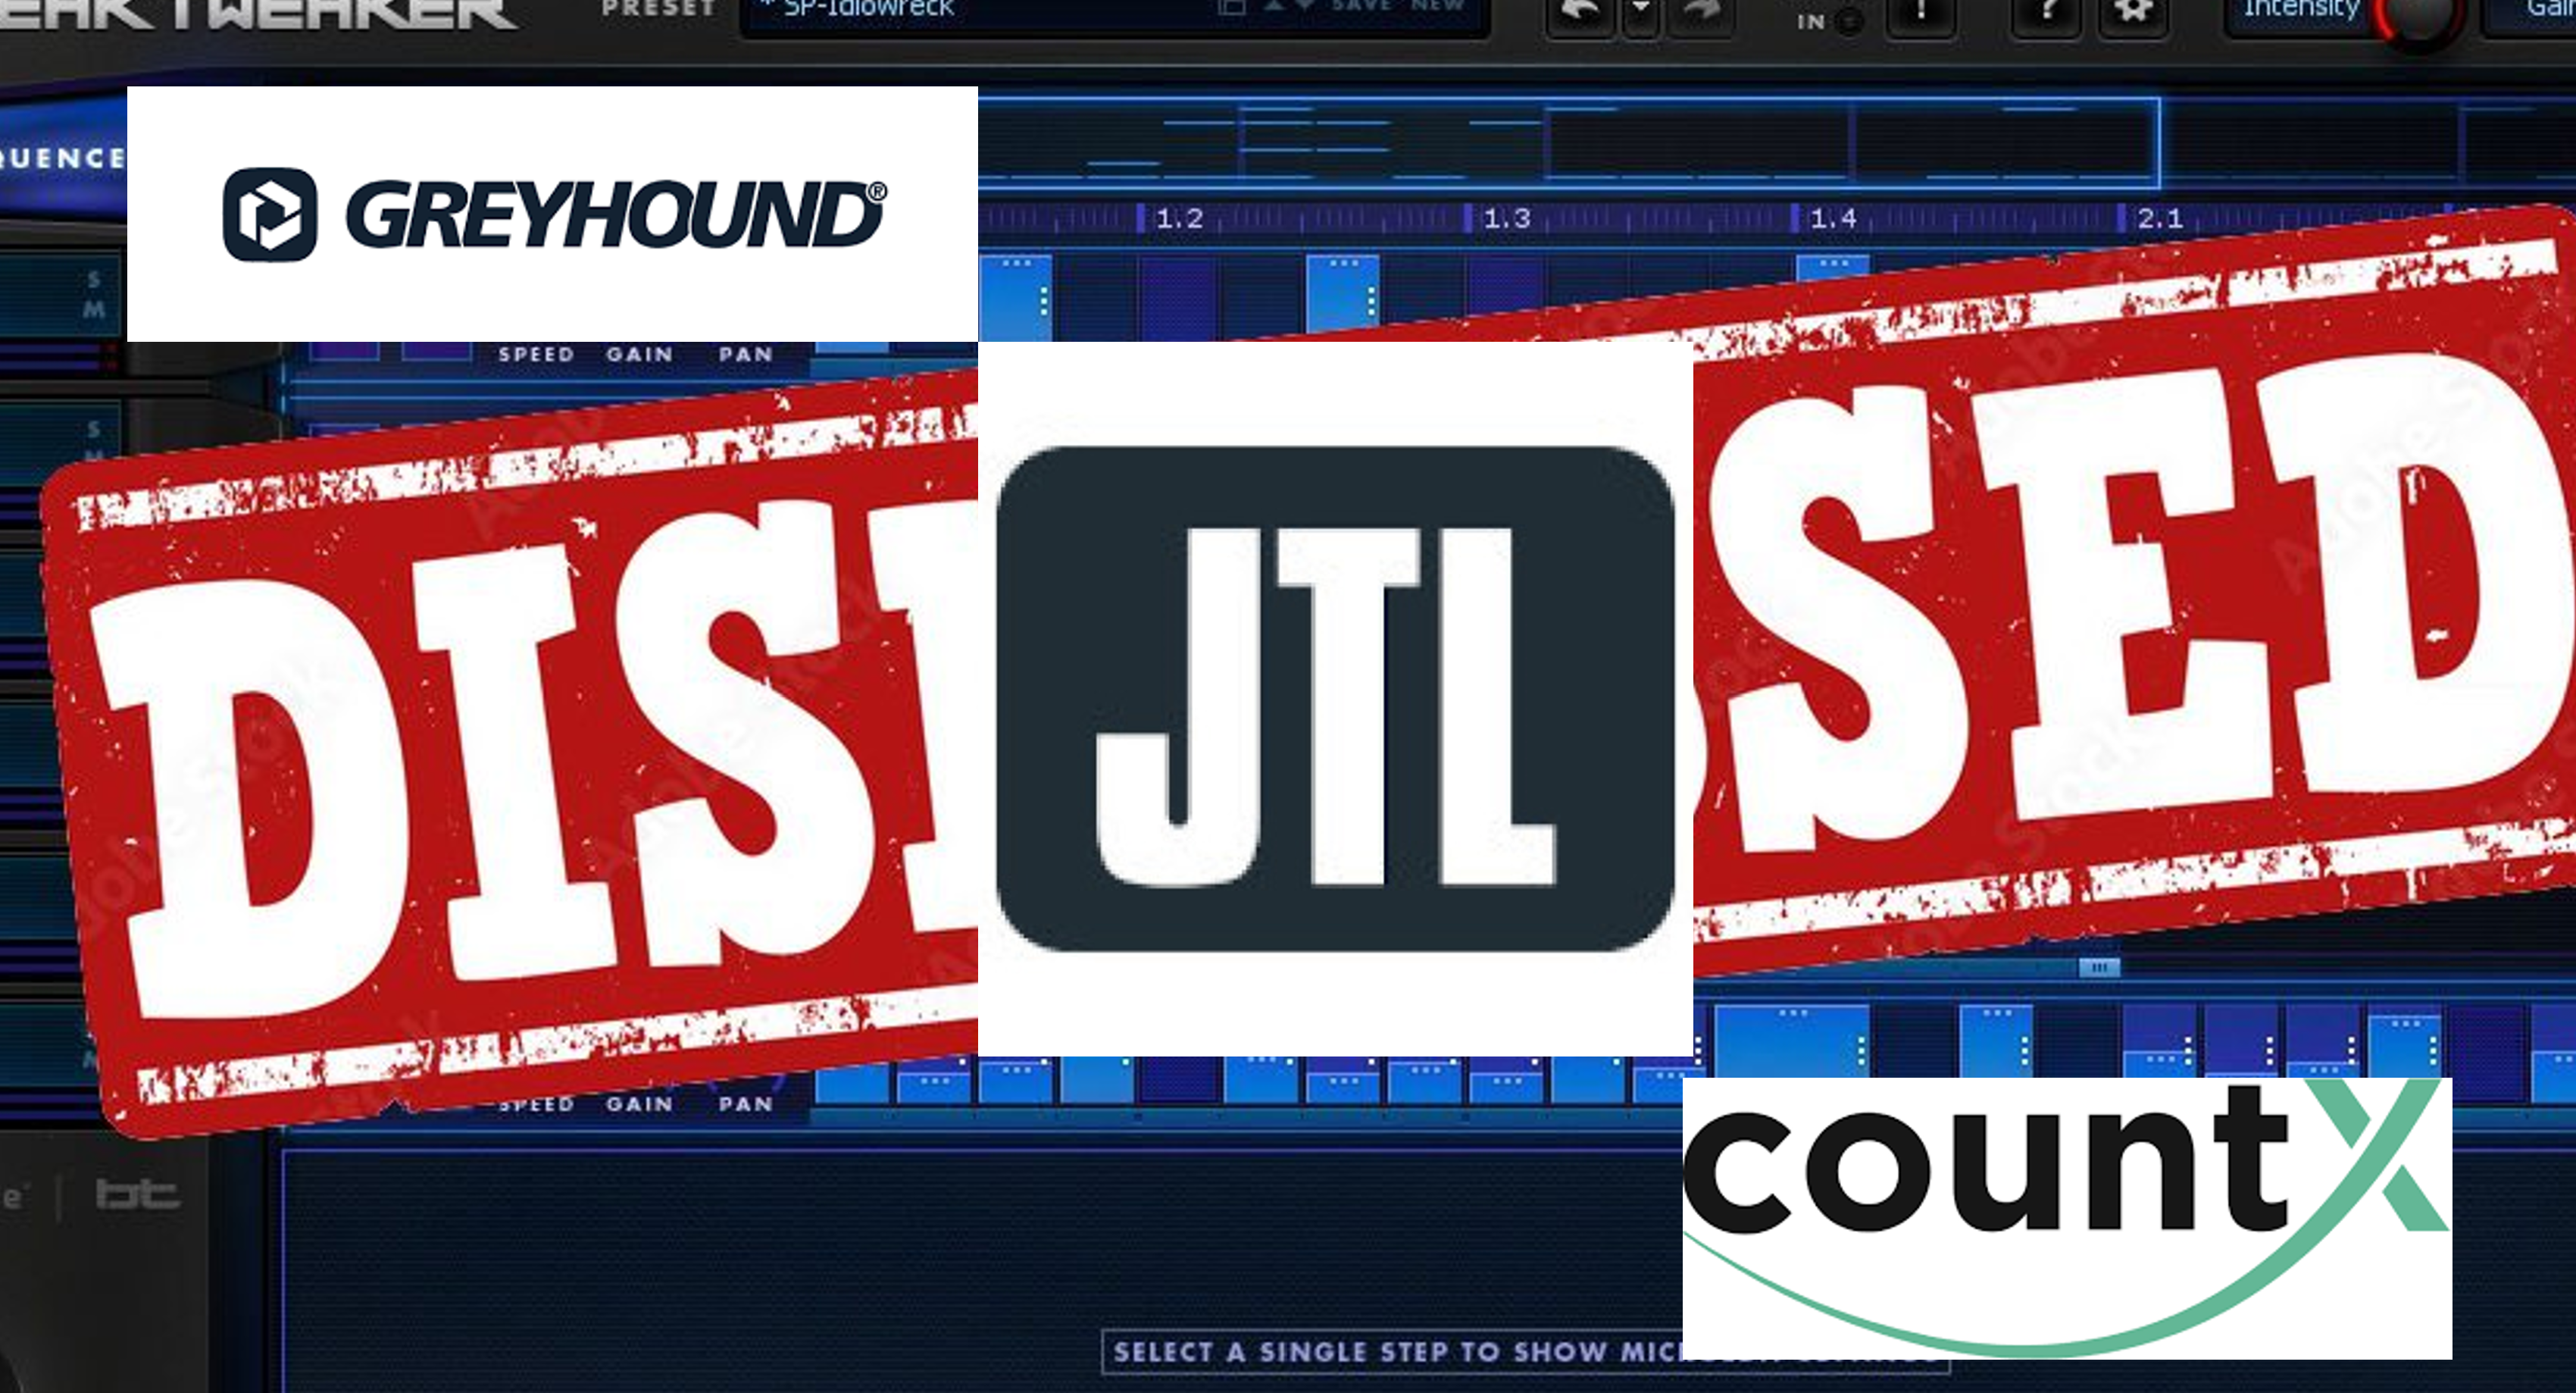 JTL Übernahme von countx & greyhound